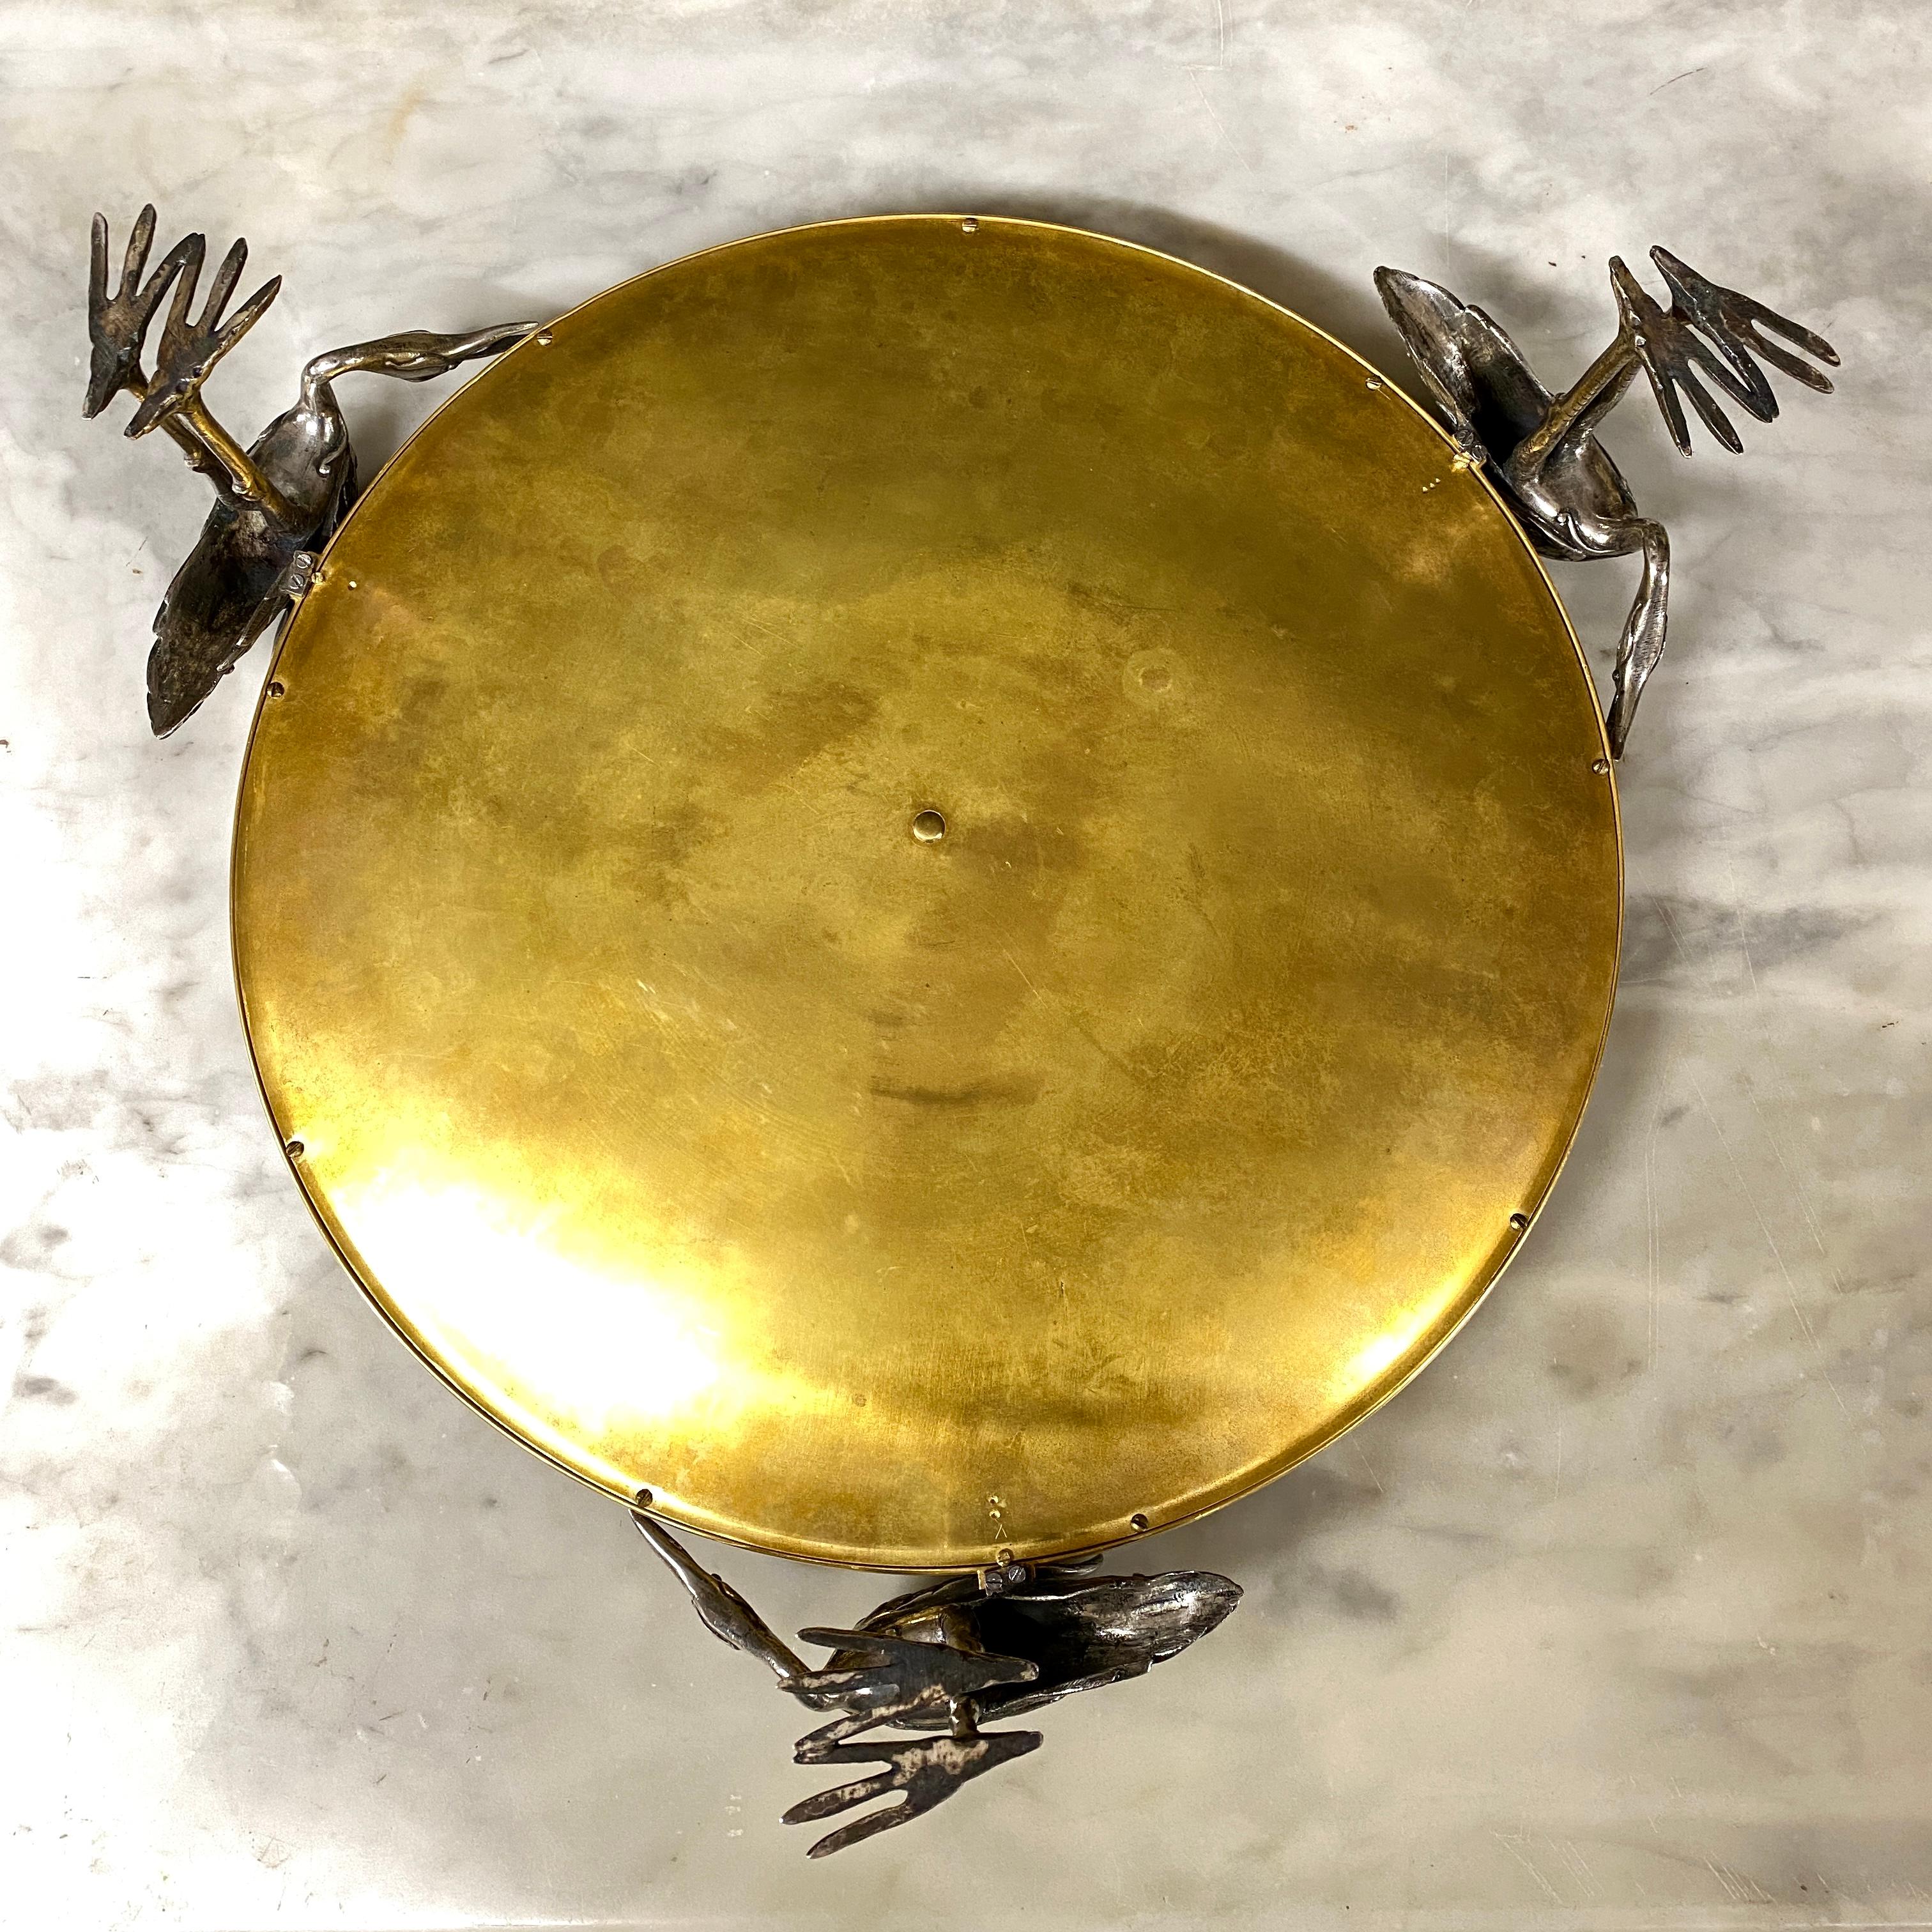 Großer Becher aus vergoldeter und versilberter Bronze, gehalten von drei Störchen, die den Sockel bilden. Es ist mit einer zentralen Intarsie aus Elfenbein und Edelholz (Palisander, Palisander) verziert, die durch ziseliertes Messing unterteilt ist.